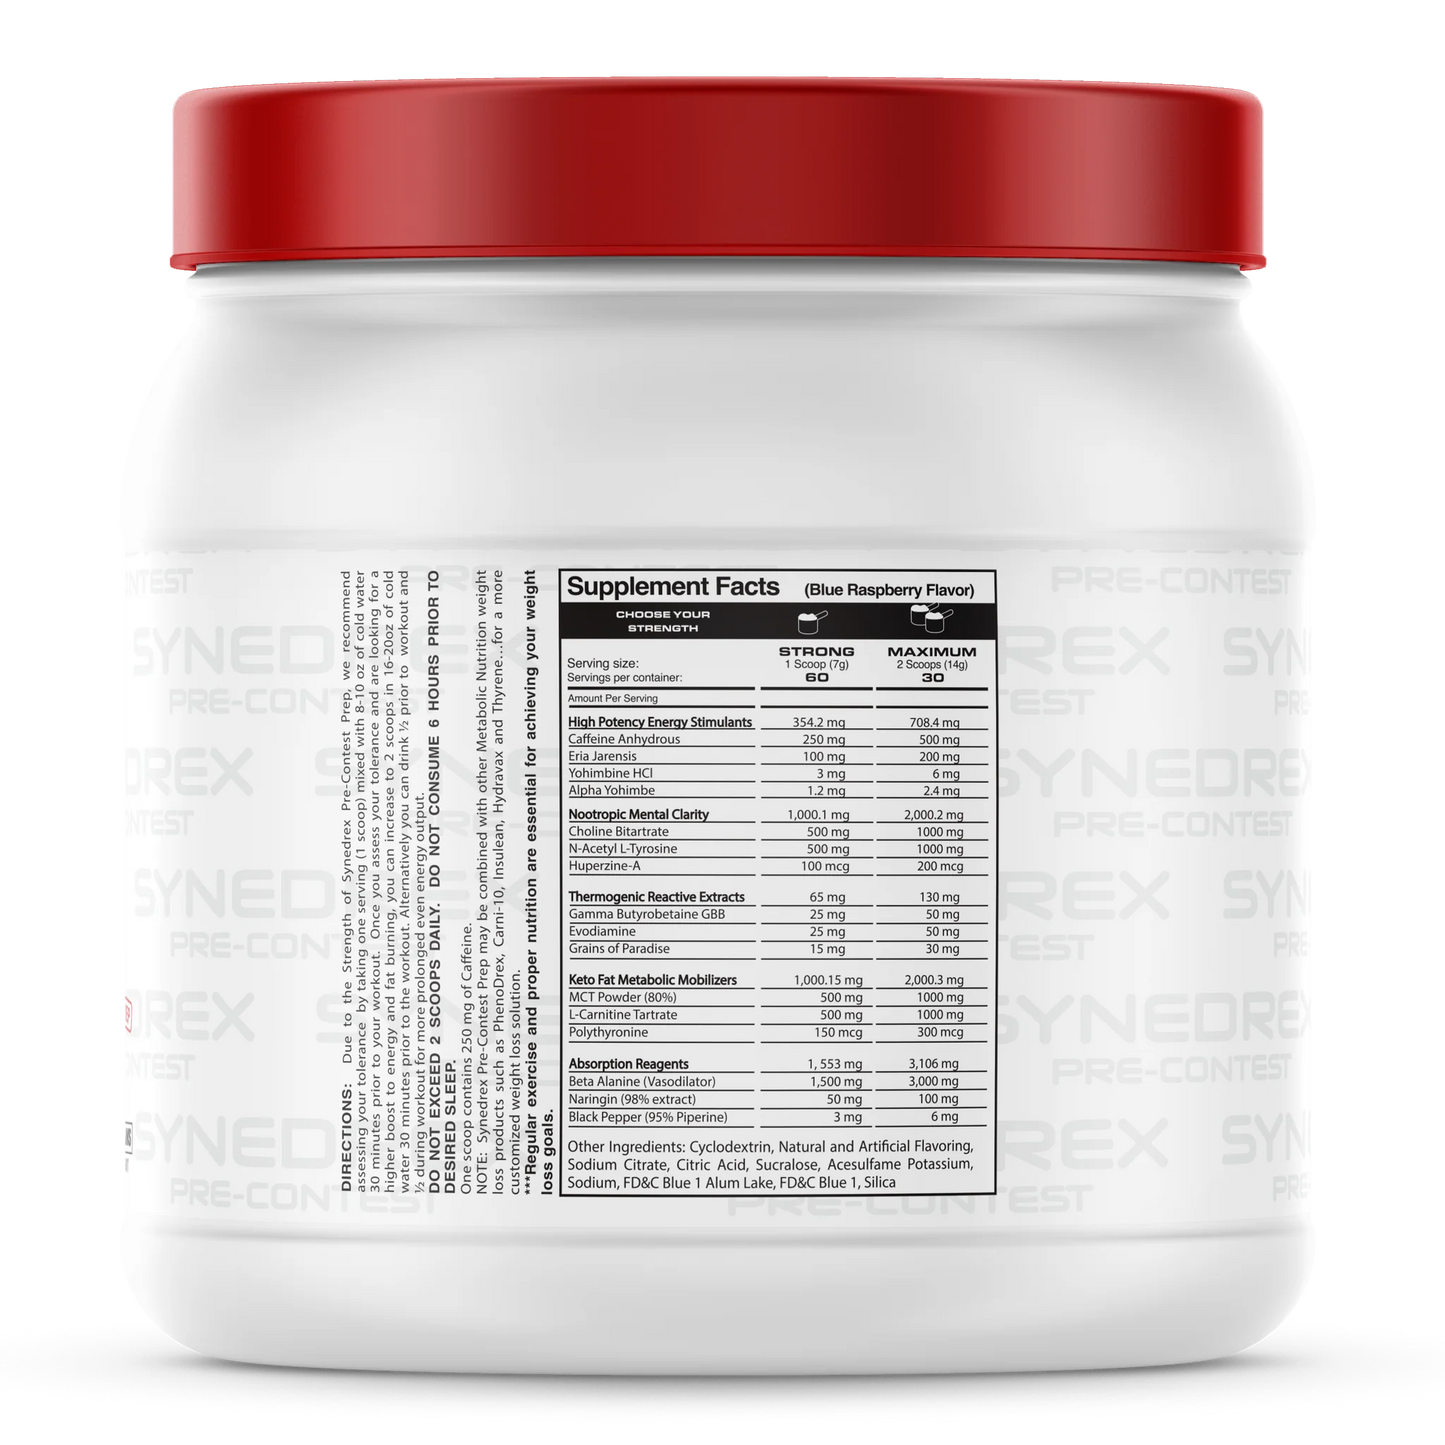 Synedrex Powder by Metabolic Nutrition